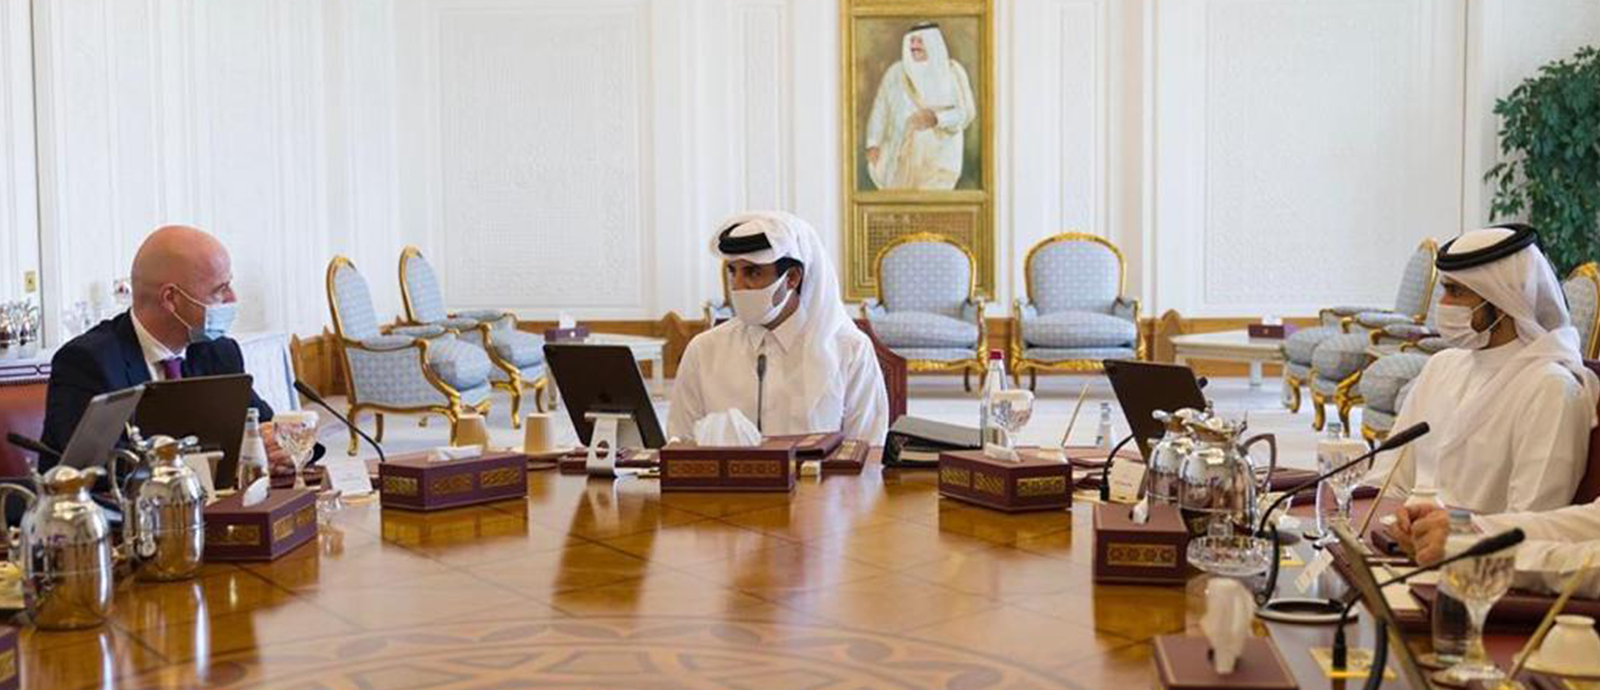 سمو الأمير يترأس اجتماع مجلس إدارة اللجنة العليا للمشاريع والإرث